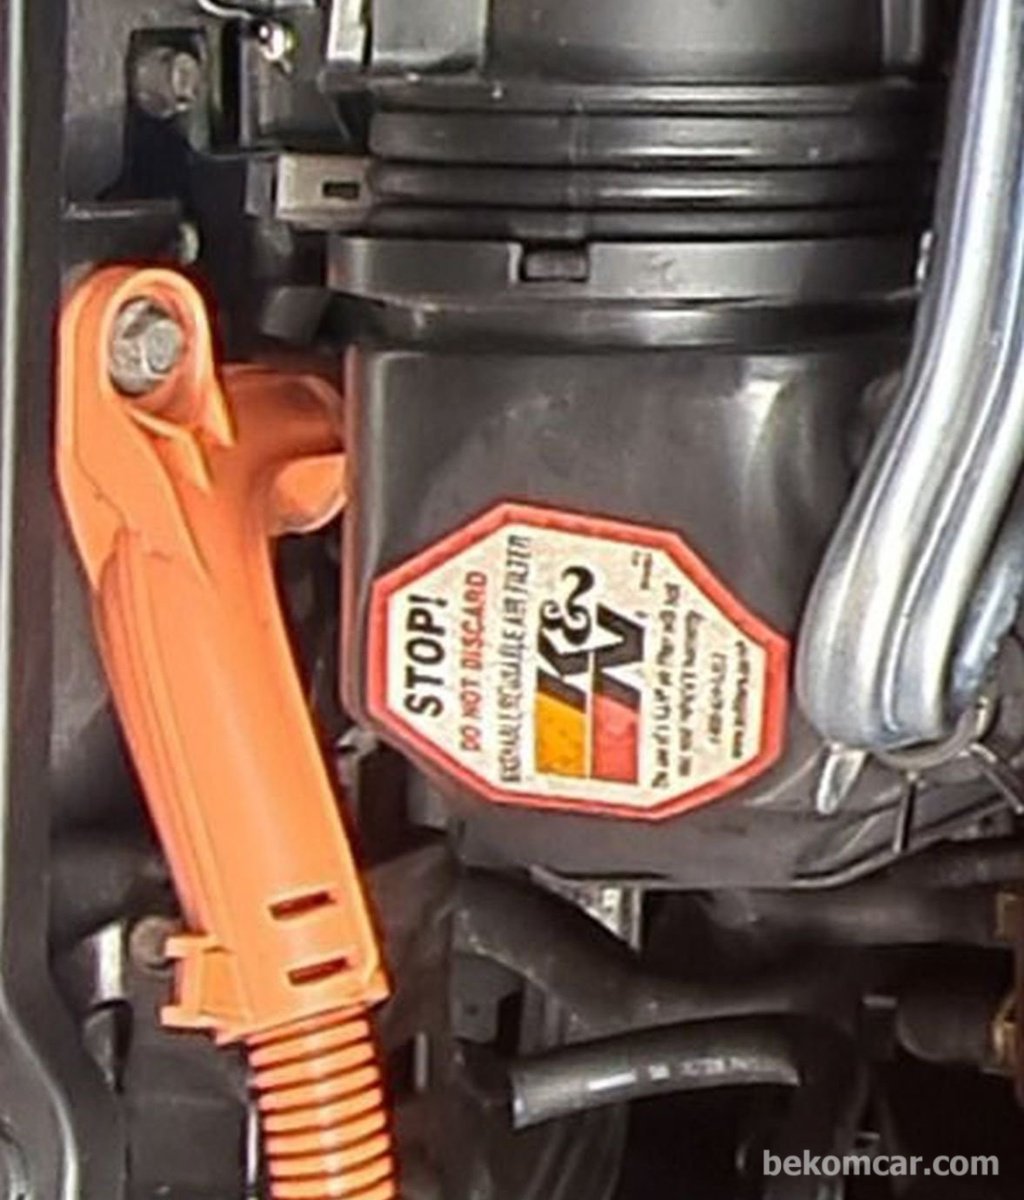 K&N 필터를 사용하는 중고차는 엔진상태를 잘 살피도록 한다|bekomcar.com